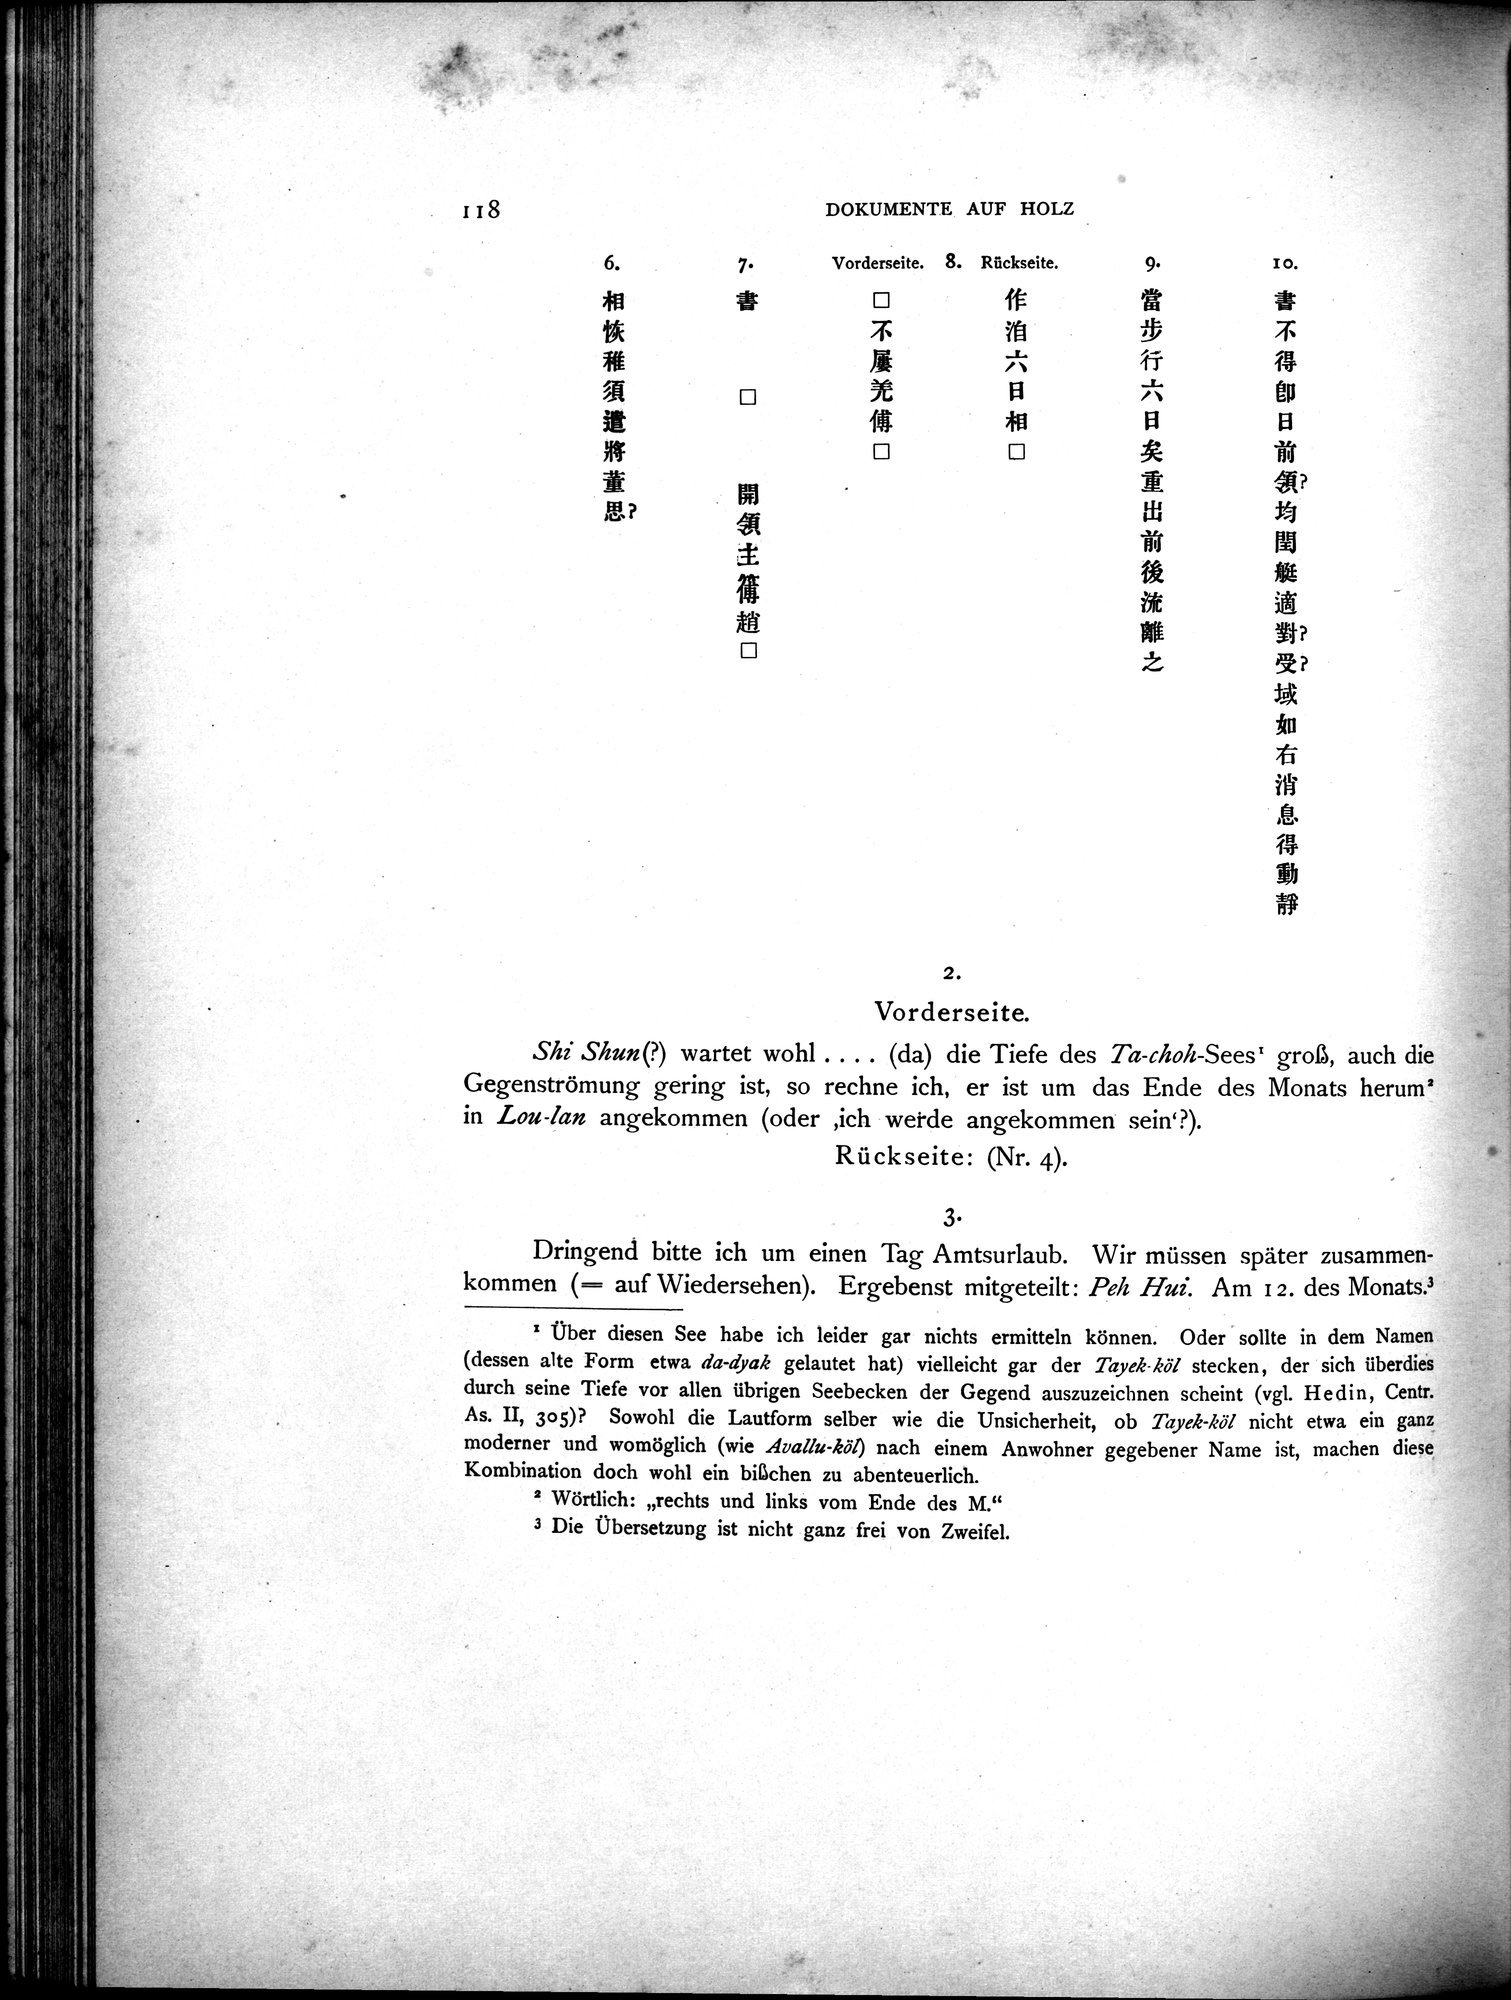 Die Chinesischen Handschriften- und sonstigen Kleinfunde Sven Hedins in Lou-lan : vol.1 / Page 142 (Grayscale High Resolution Image)